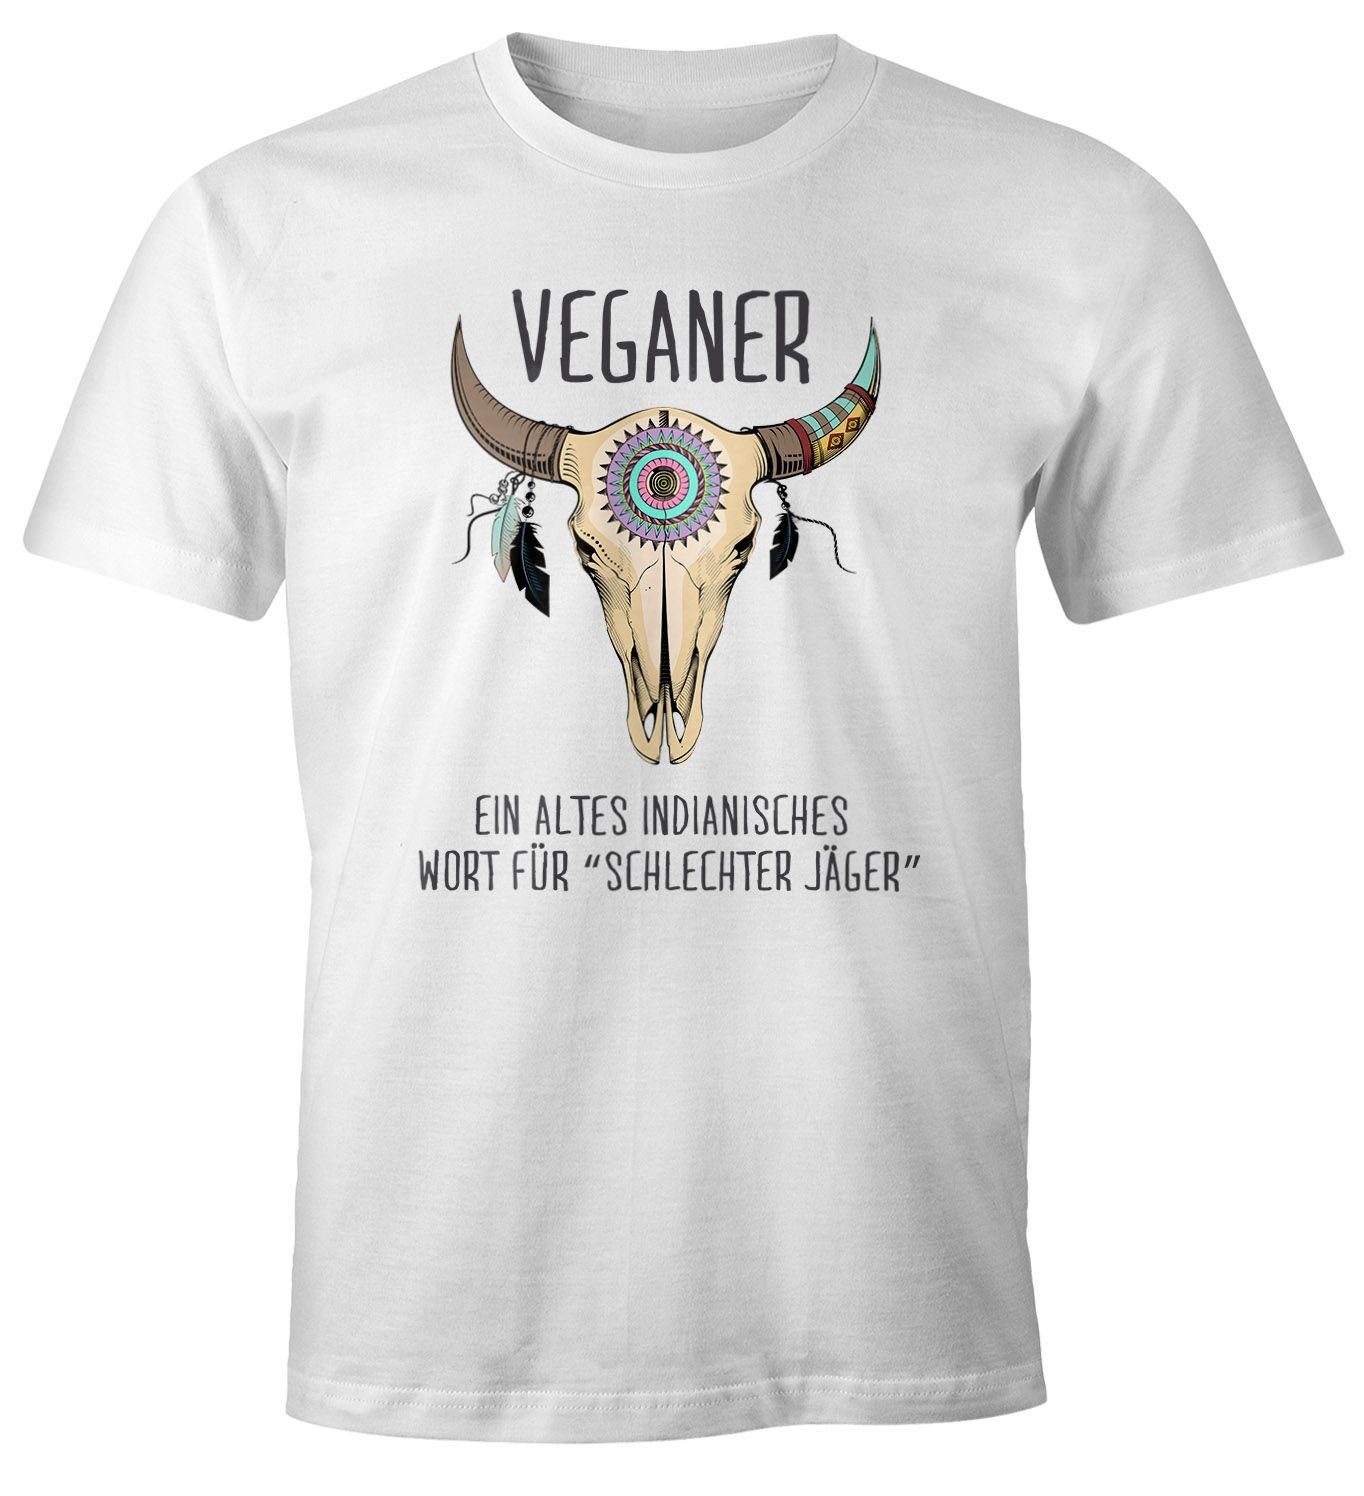 MoonWorks Print-Shirt Herren T-Shirt Vegetarier / Veganer Schlechter Jäger Spruch Skull lustig Fun-Shirt Moonworks® mit Print Veganer weiß